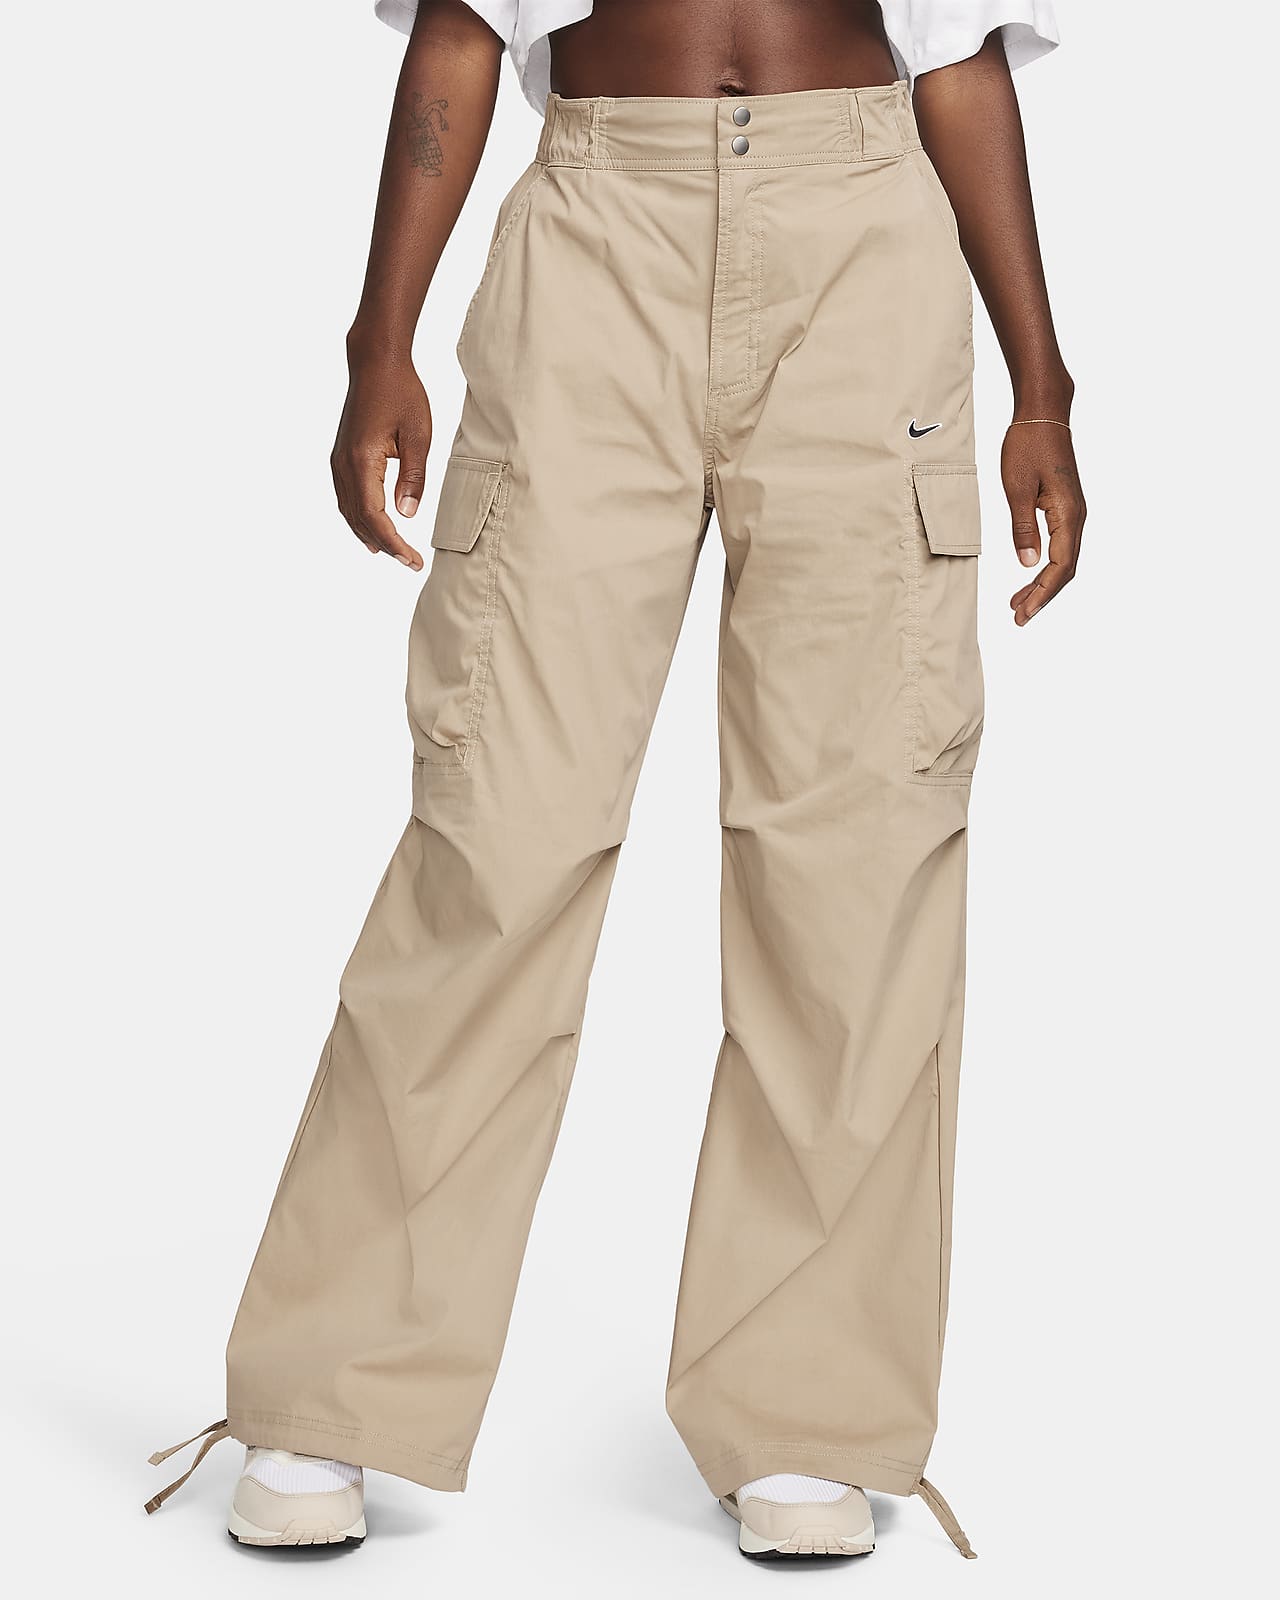 Nike Sportswear Pantalón cargo de tejido Woven y talle alto con ajuste holgado - Mujer